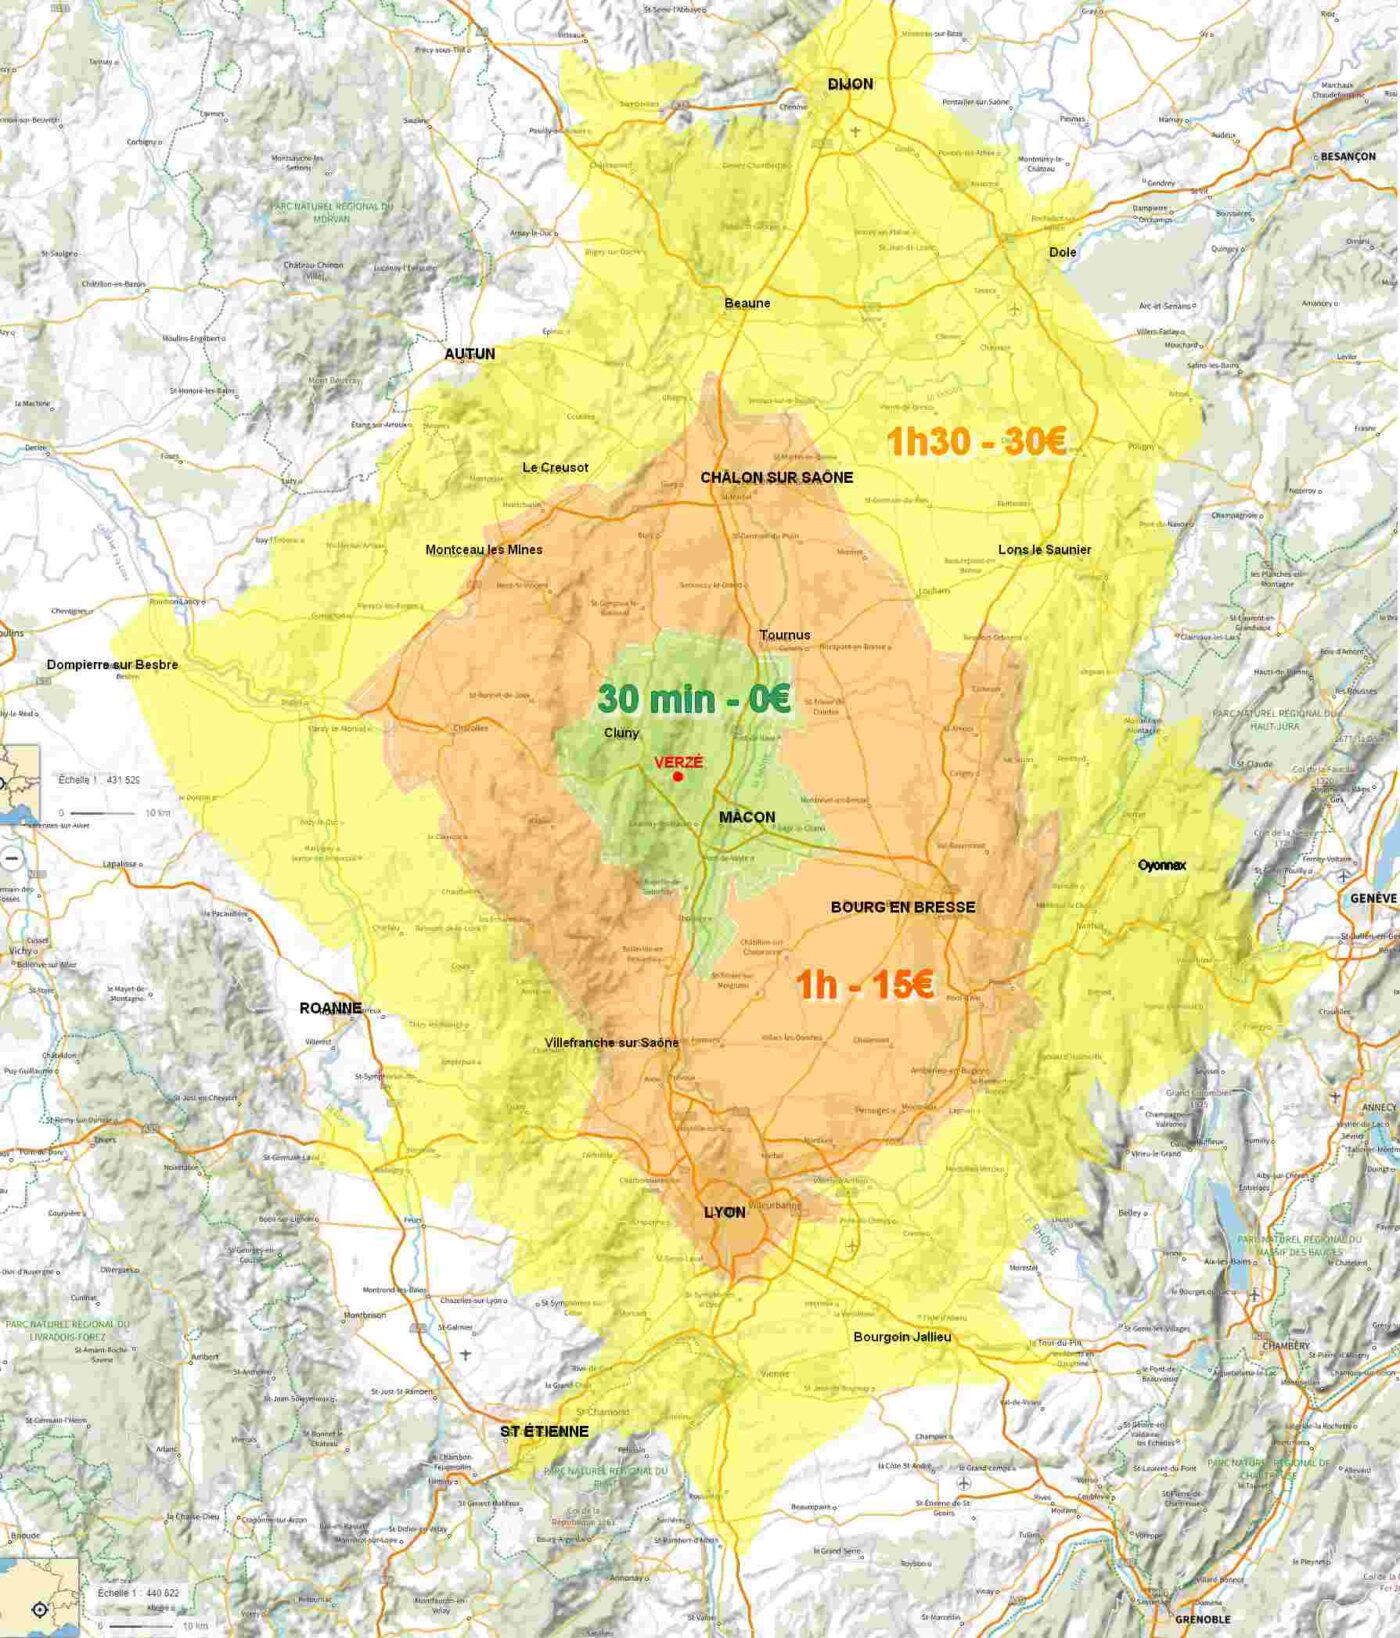 Zones de déplacement - secteur Bourgogne